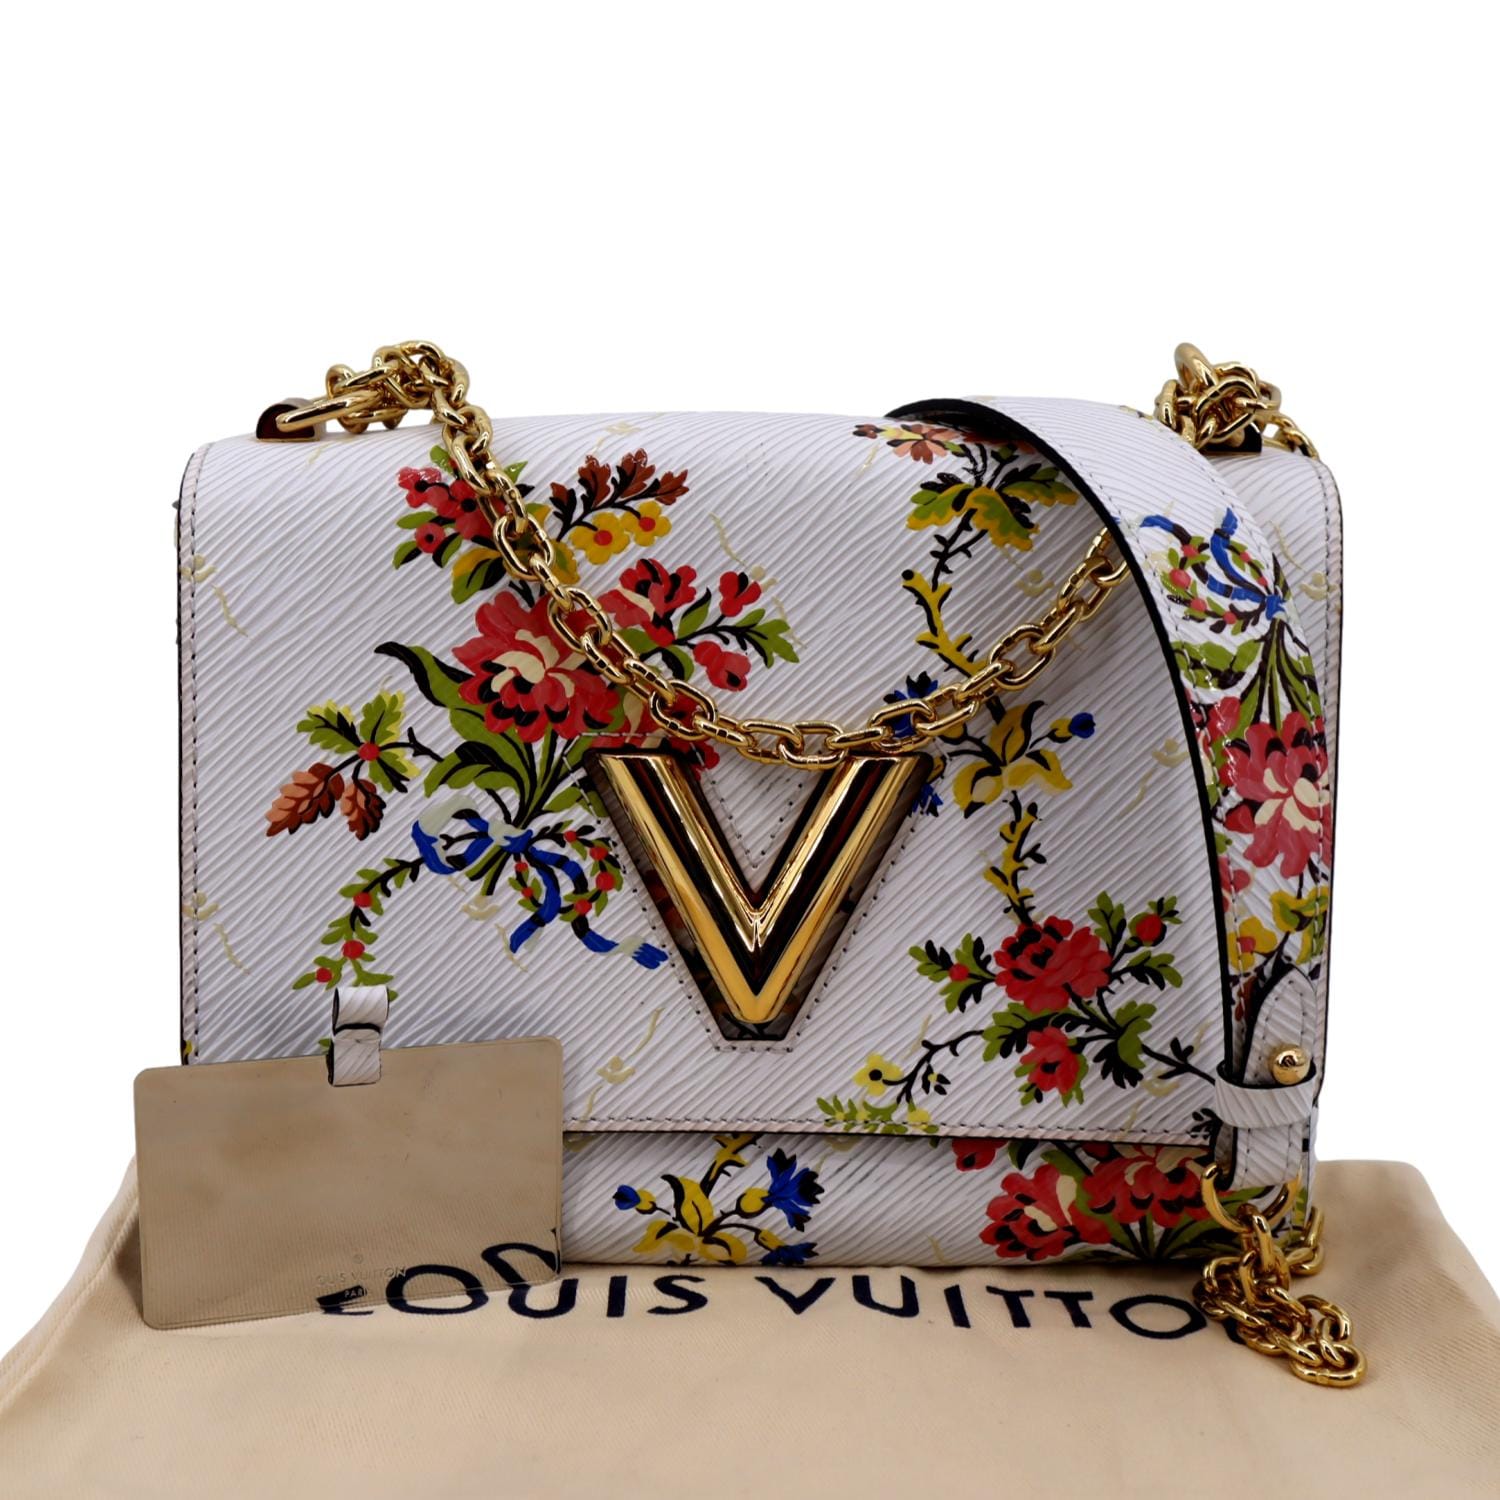 Louis Vuitton Leather Twist MM Messenger Bag Multicolor